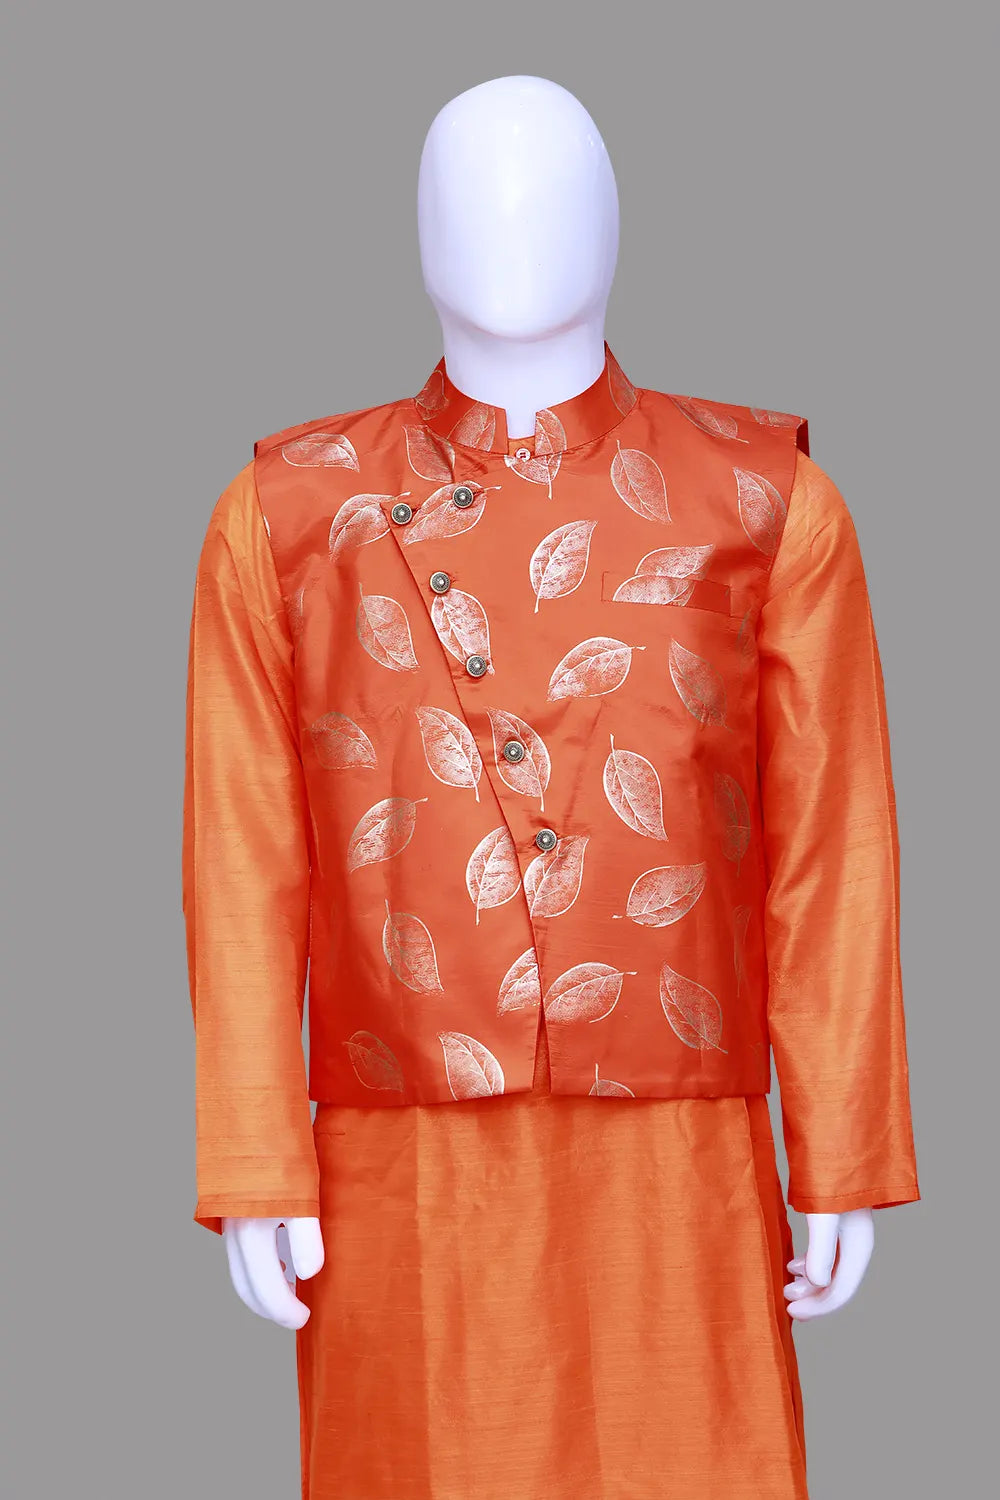 Printed Orange Men's Ethnic Sherwani Set | Orange Sherwani